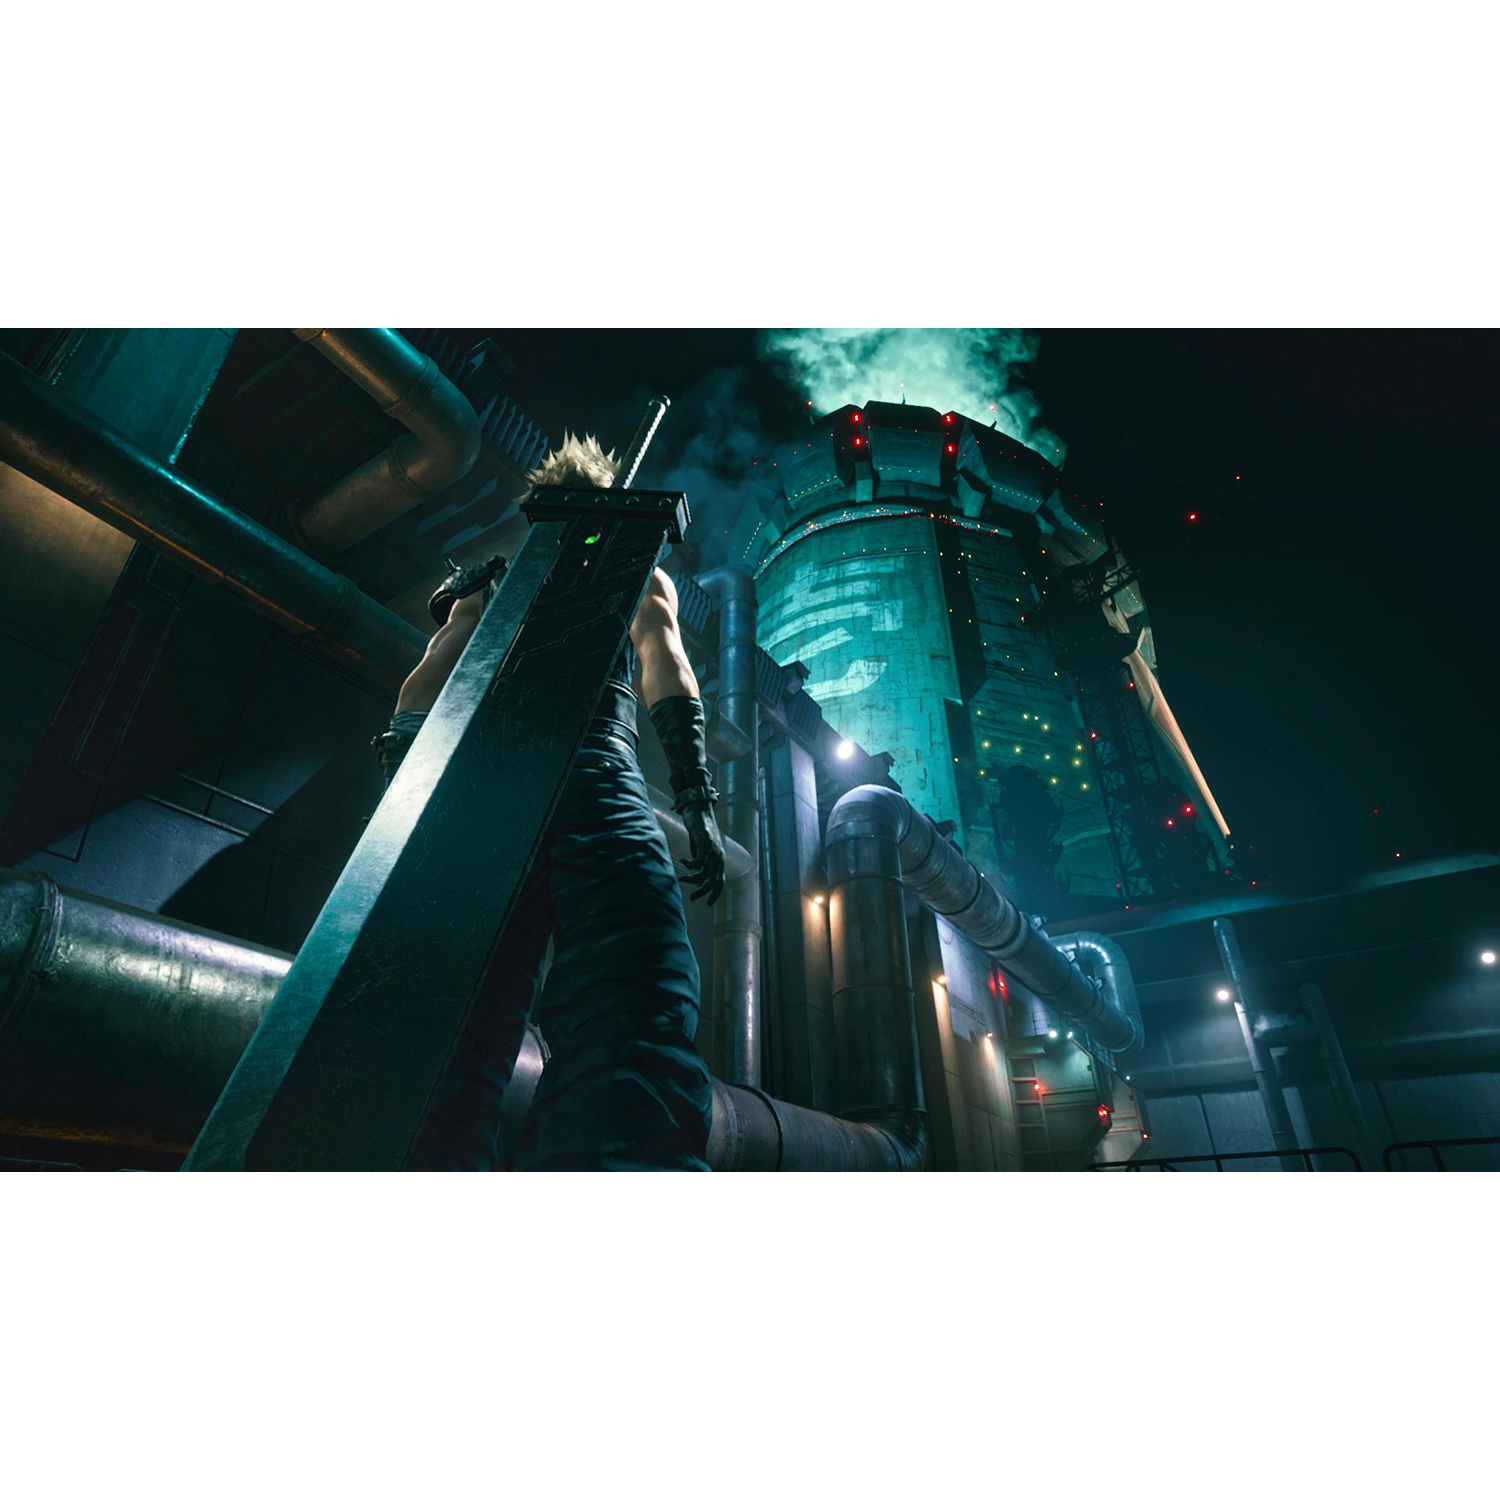 Final Fantasy VII Remake - PlayStation 4 - image 4 of 27